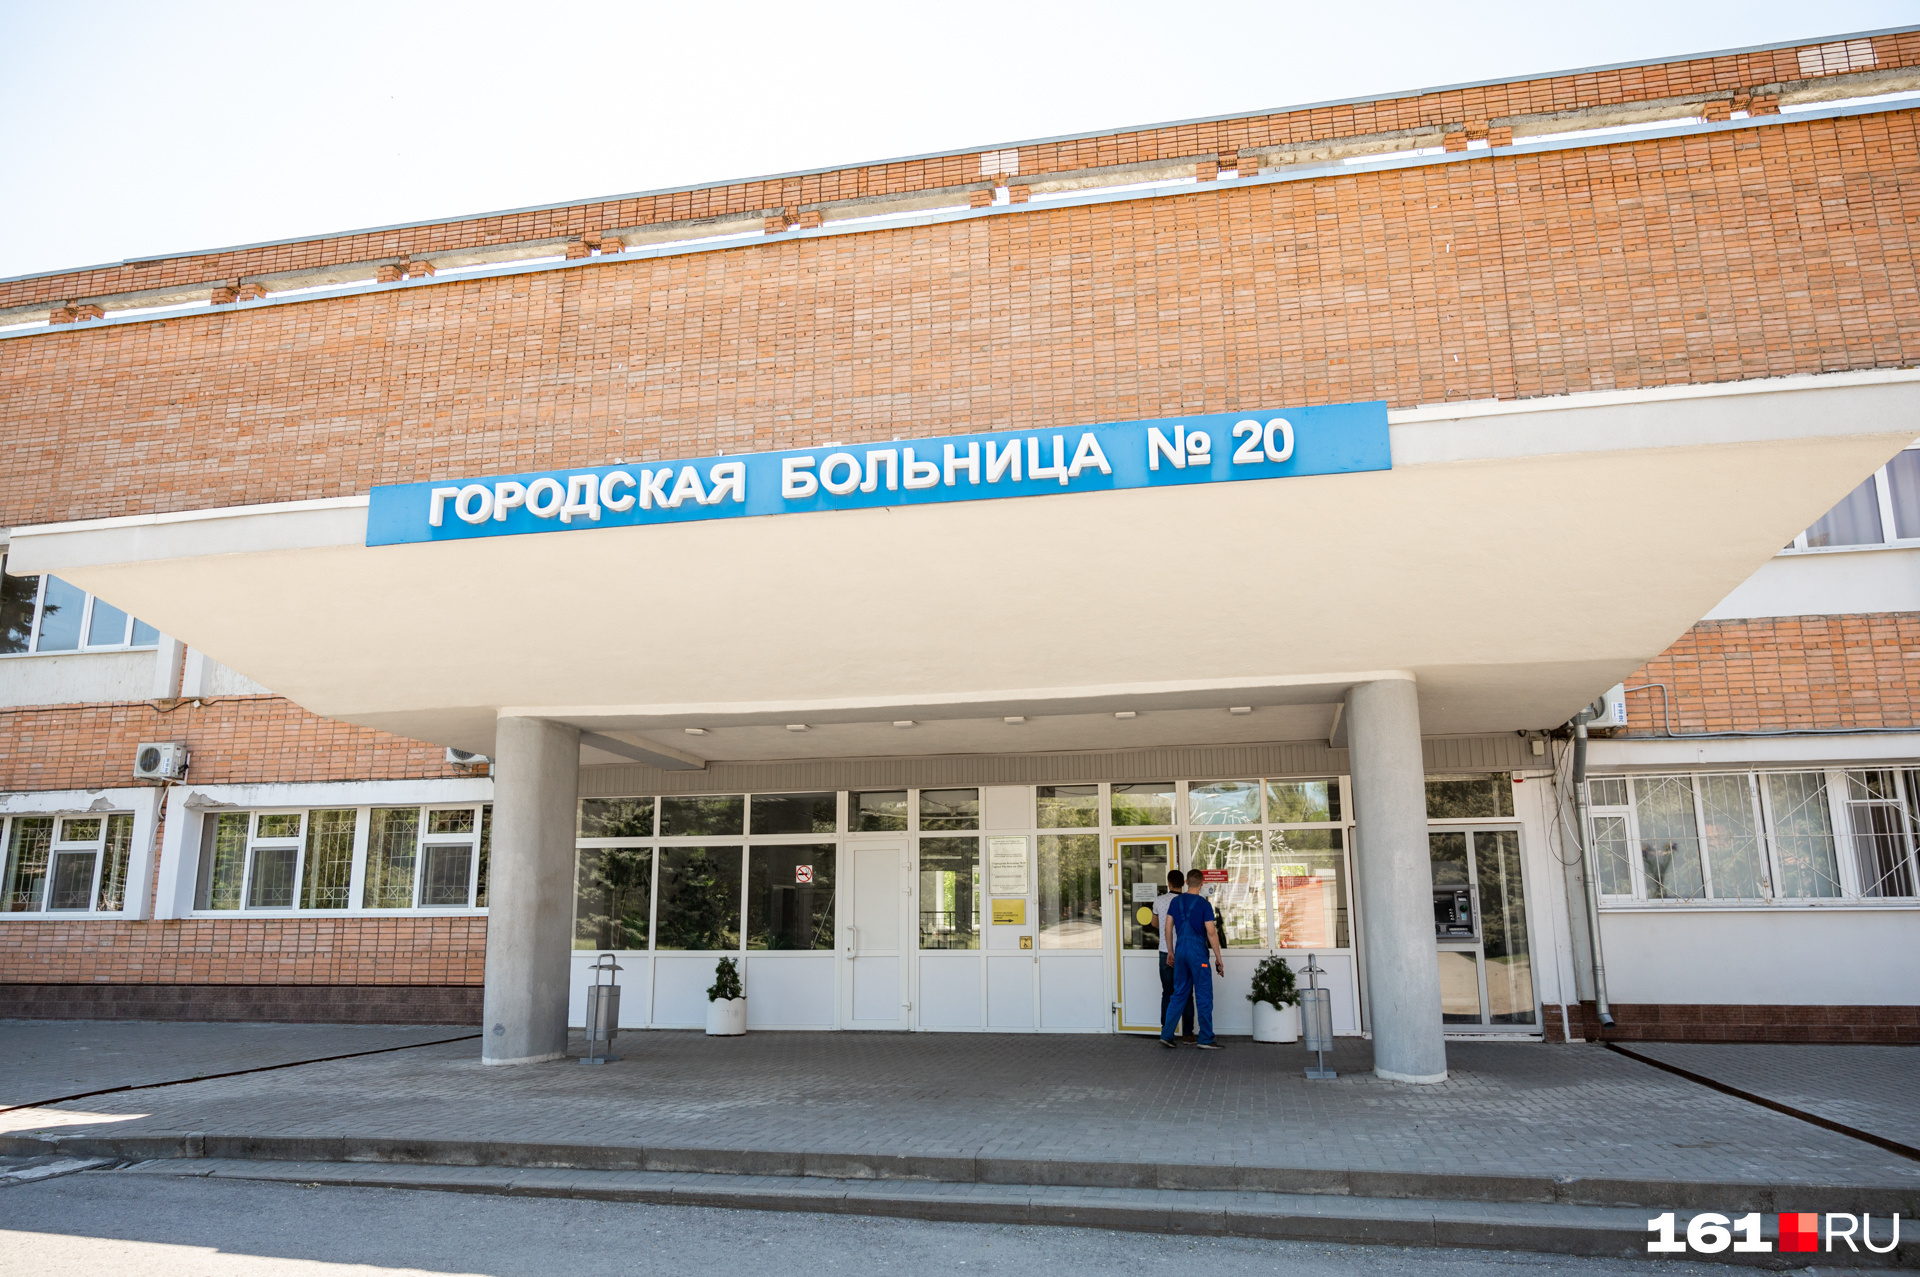 20-я больница стала вторым медучреждением в Ростове, на базе которого разместили моногоспиталь для больных коронавирусом